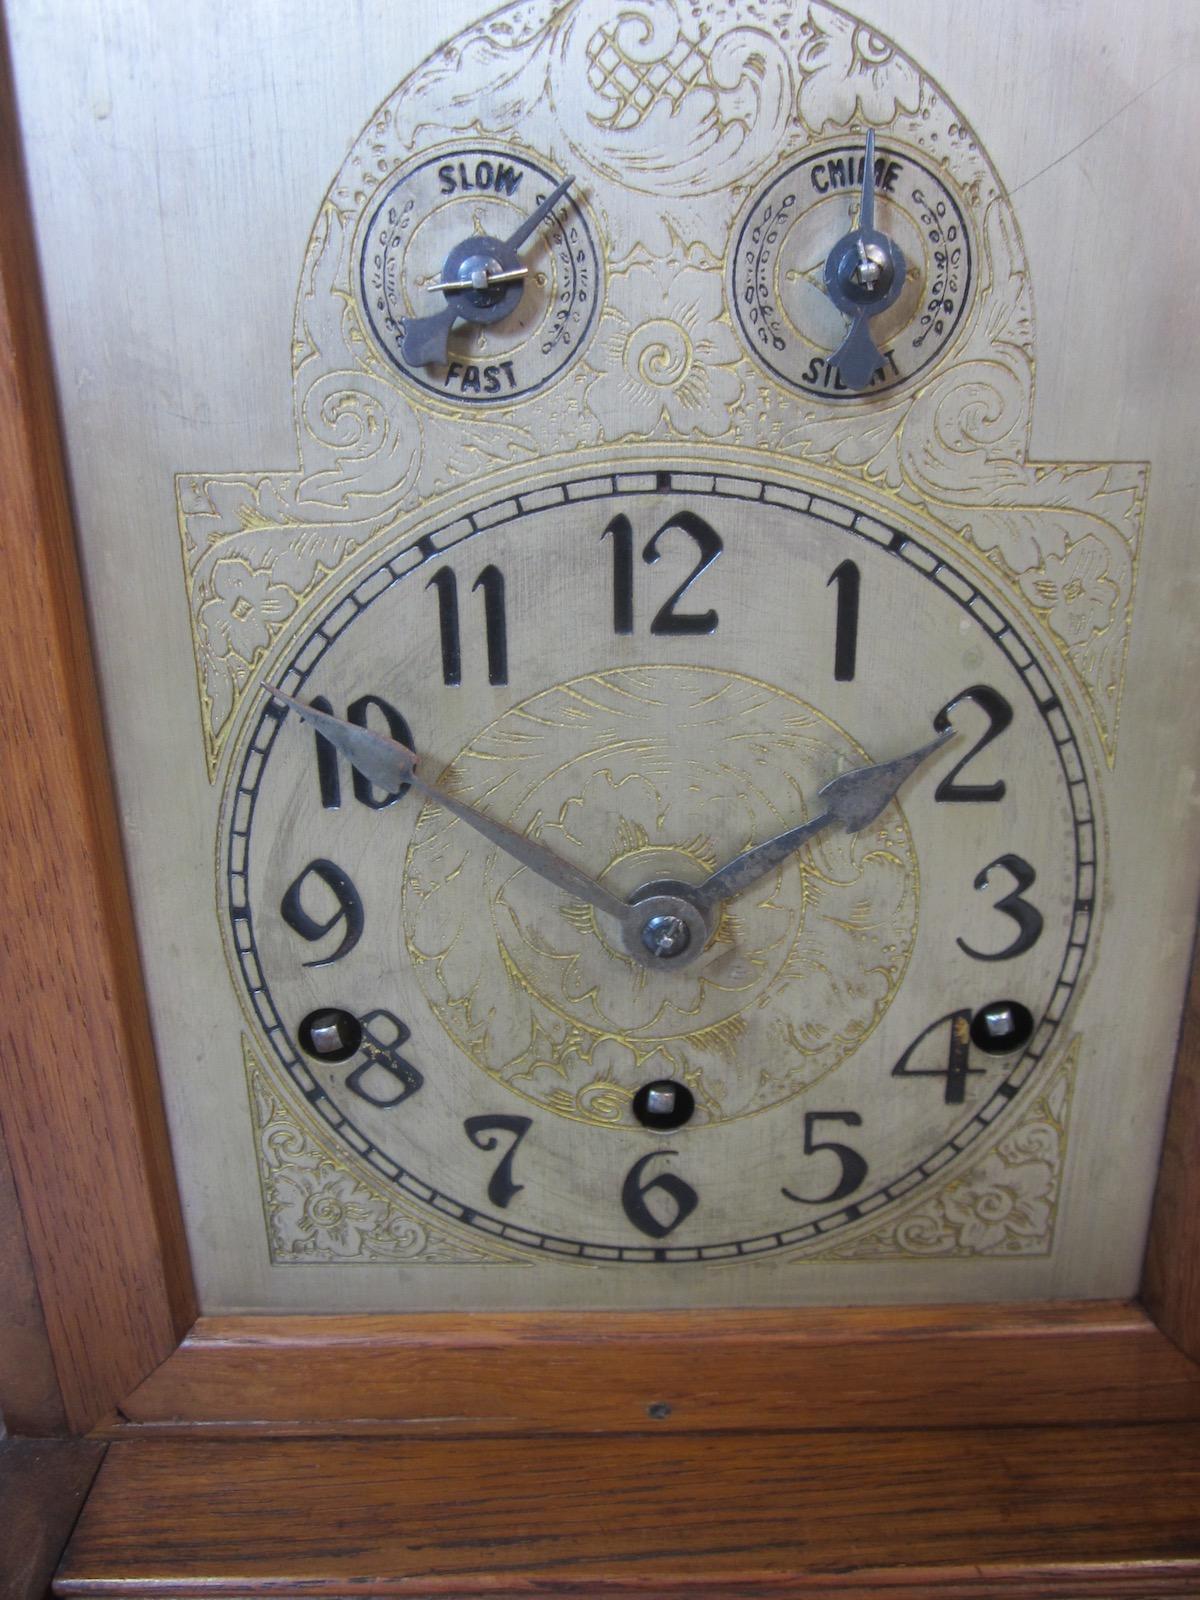 strausbourg manor quartz westminster chime clock